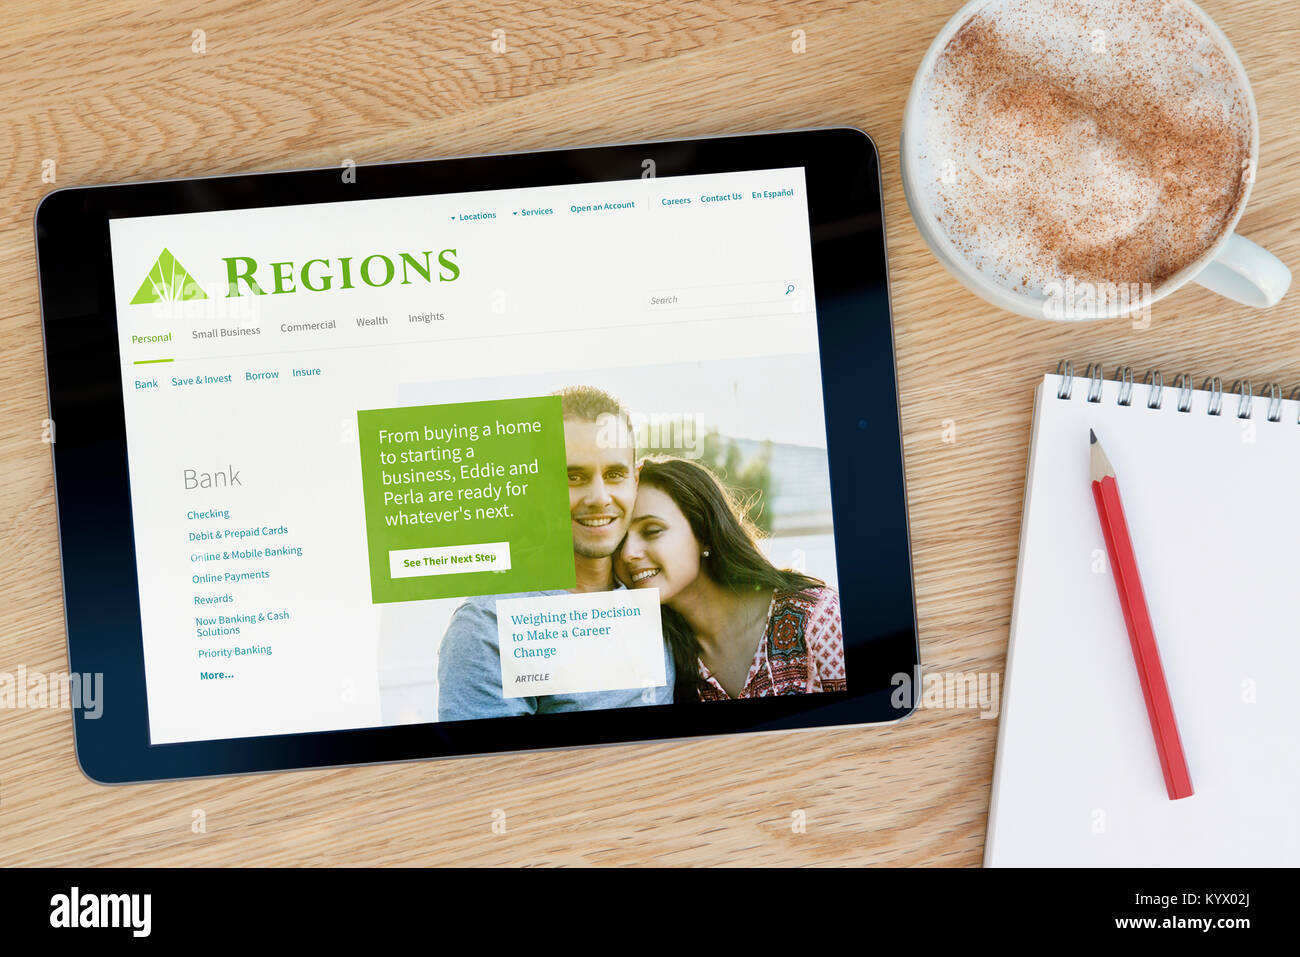 Les régions Financial Corporation Site internet sur une tablette iPad, sur une table en bois à côté d'un bloc-notes, crayon et tasse de café (rédaction uniquement) Banque D'Images